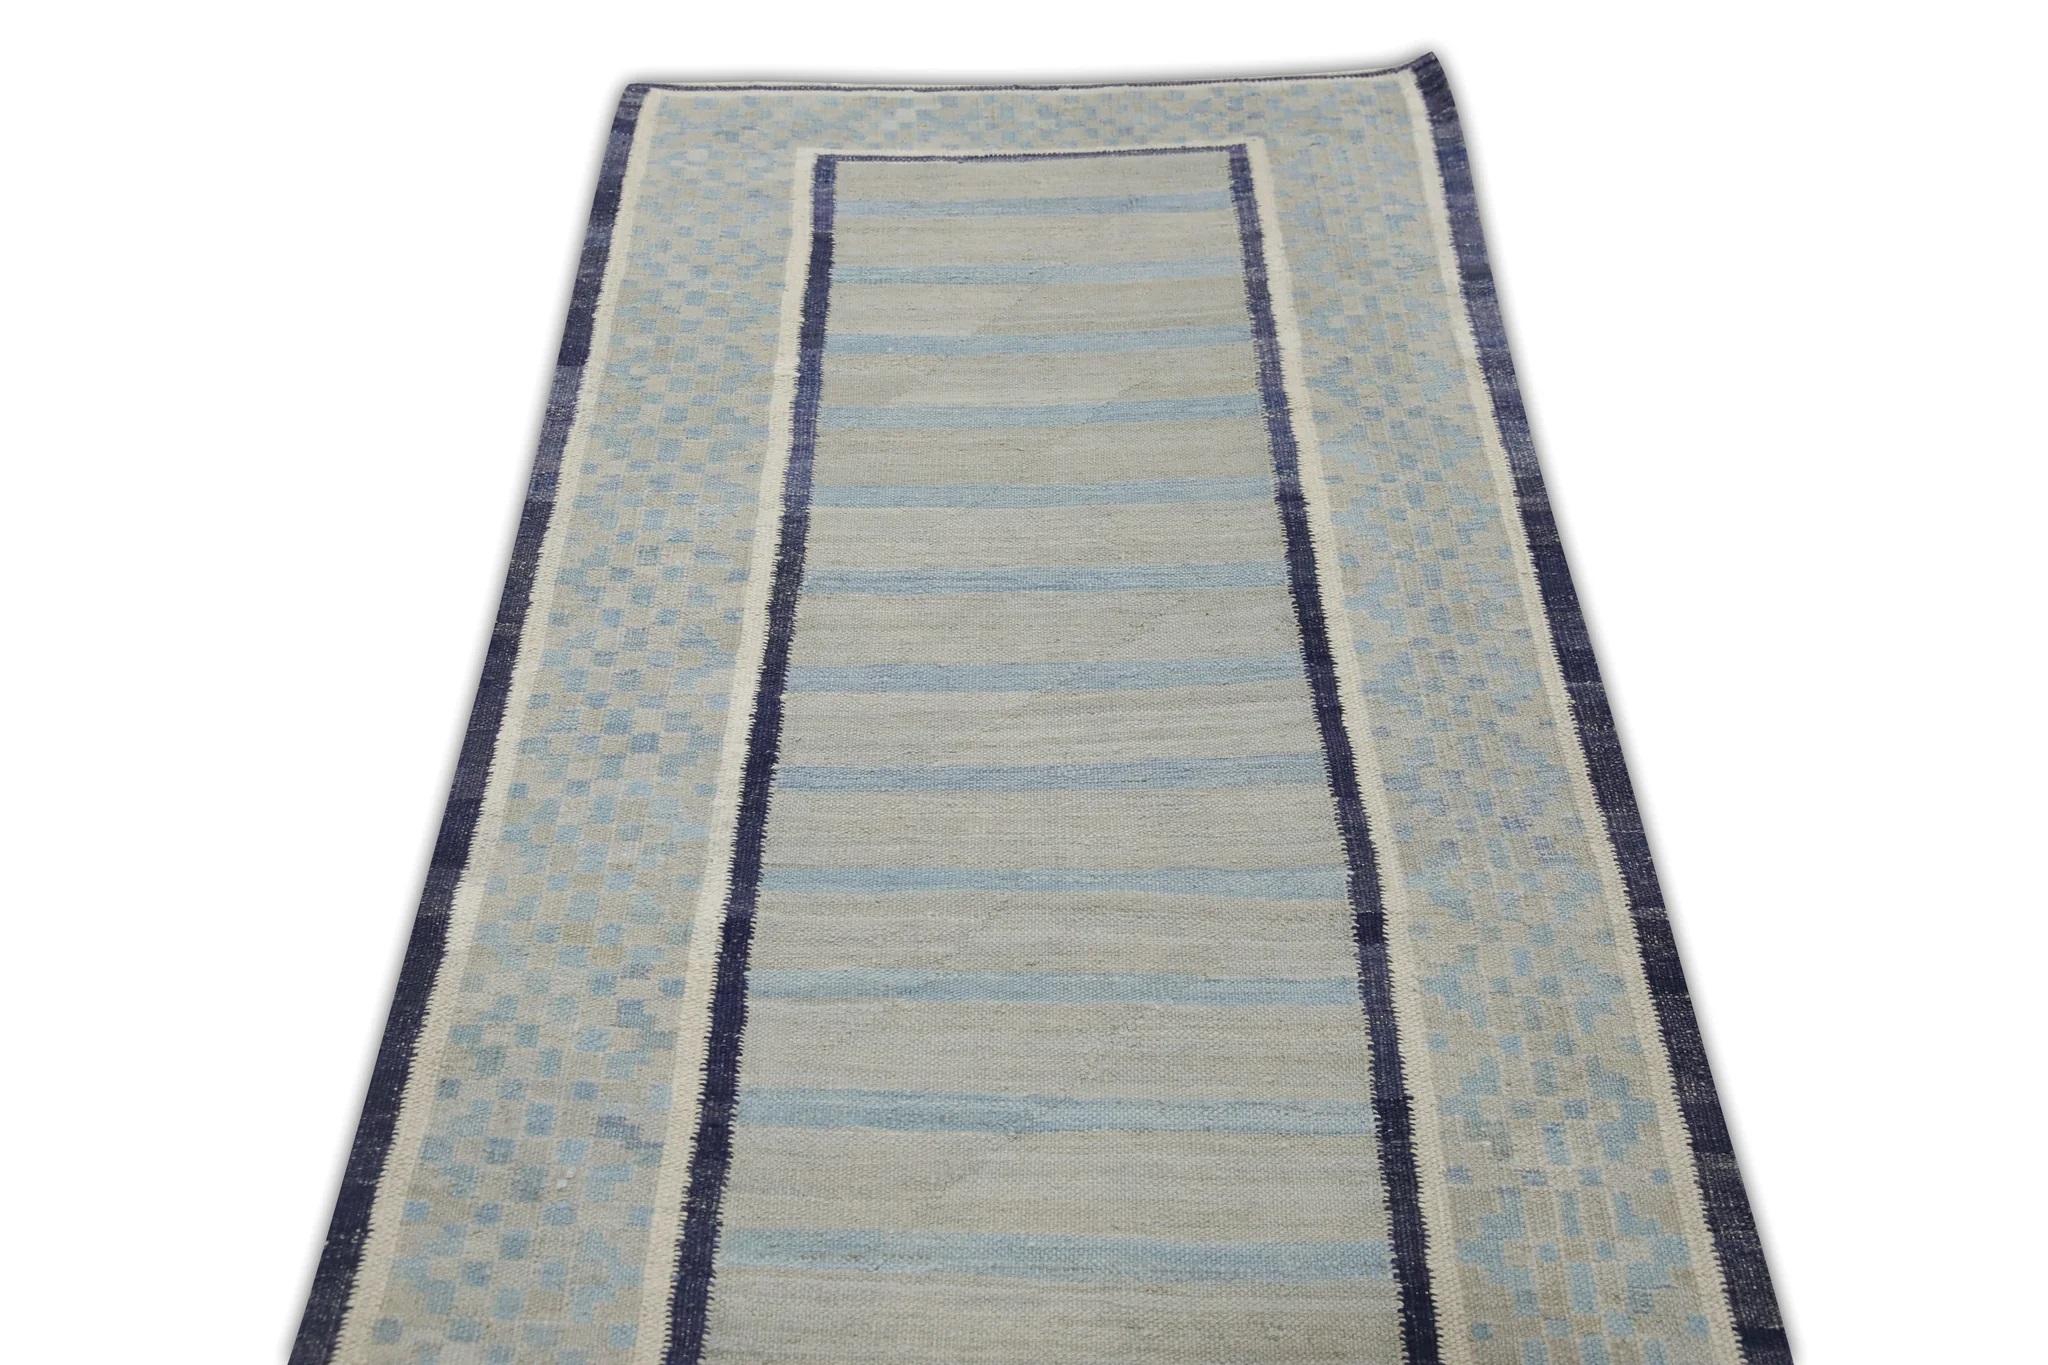 Vegetable Dyed Flatweave Handmade Wool Runner in Blue Geometric Pattern 2'11